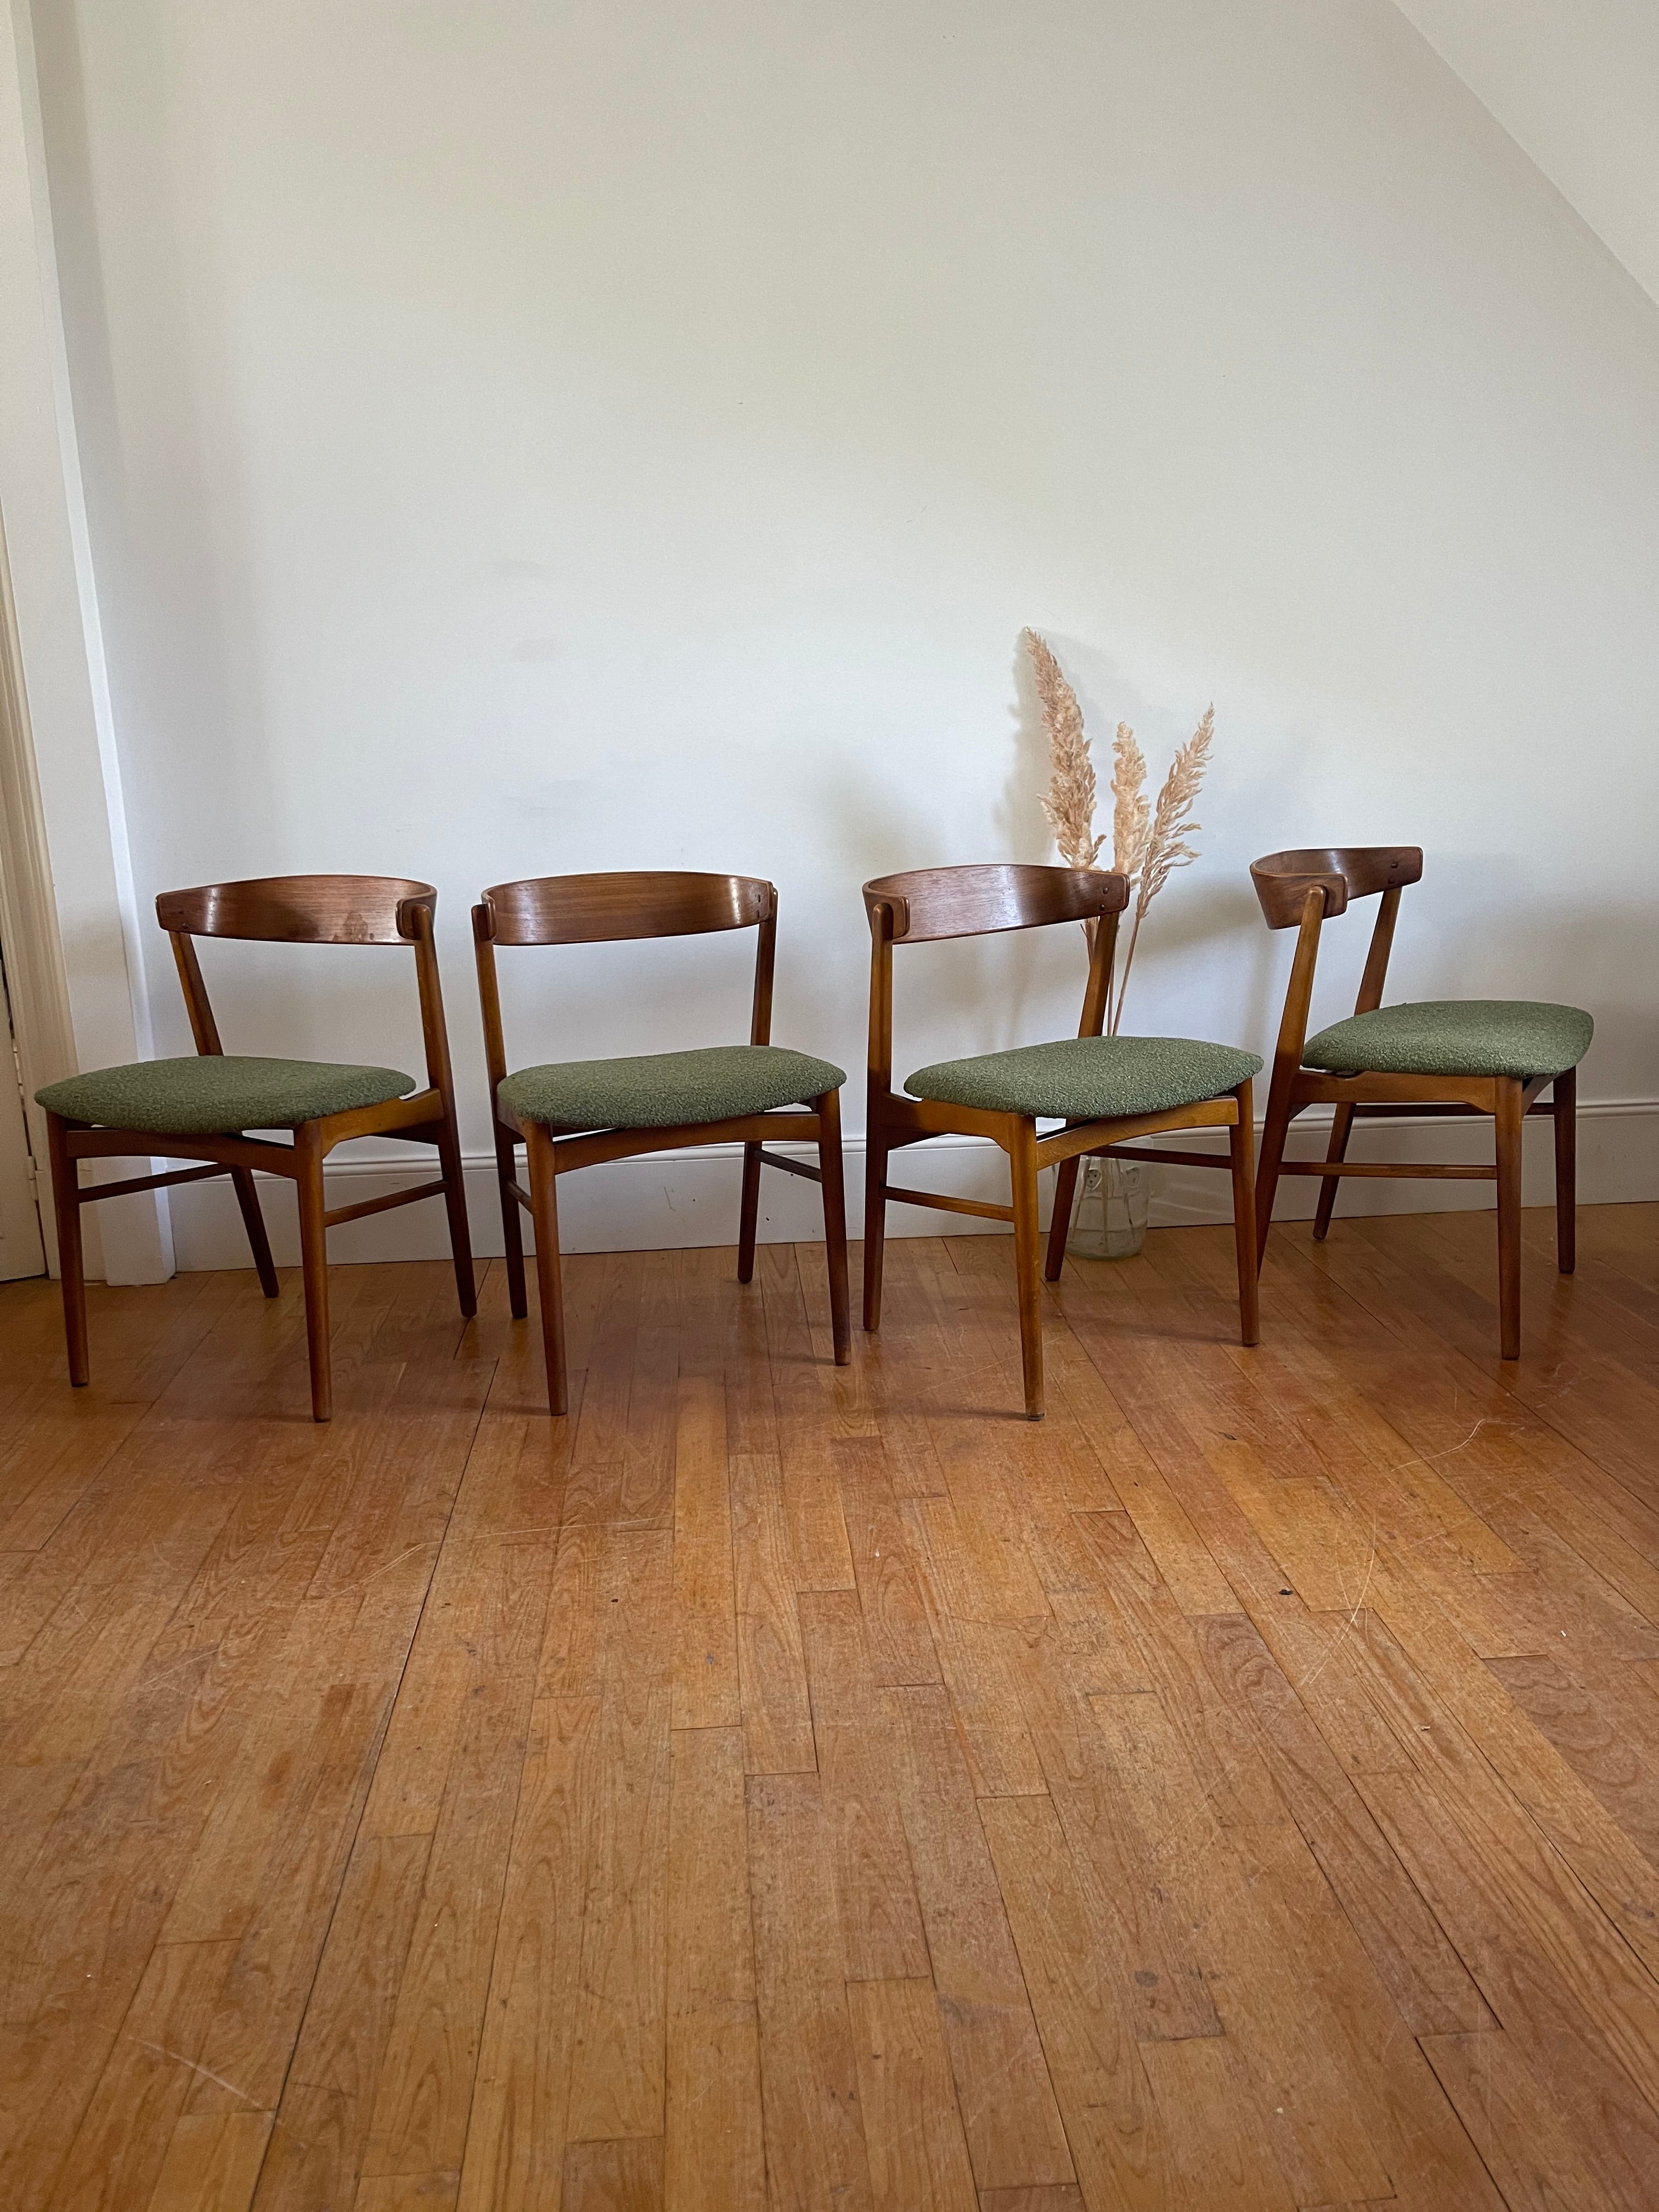 Suite de 4 chaises scandinaves Farstrup 206